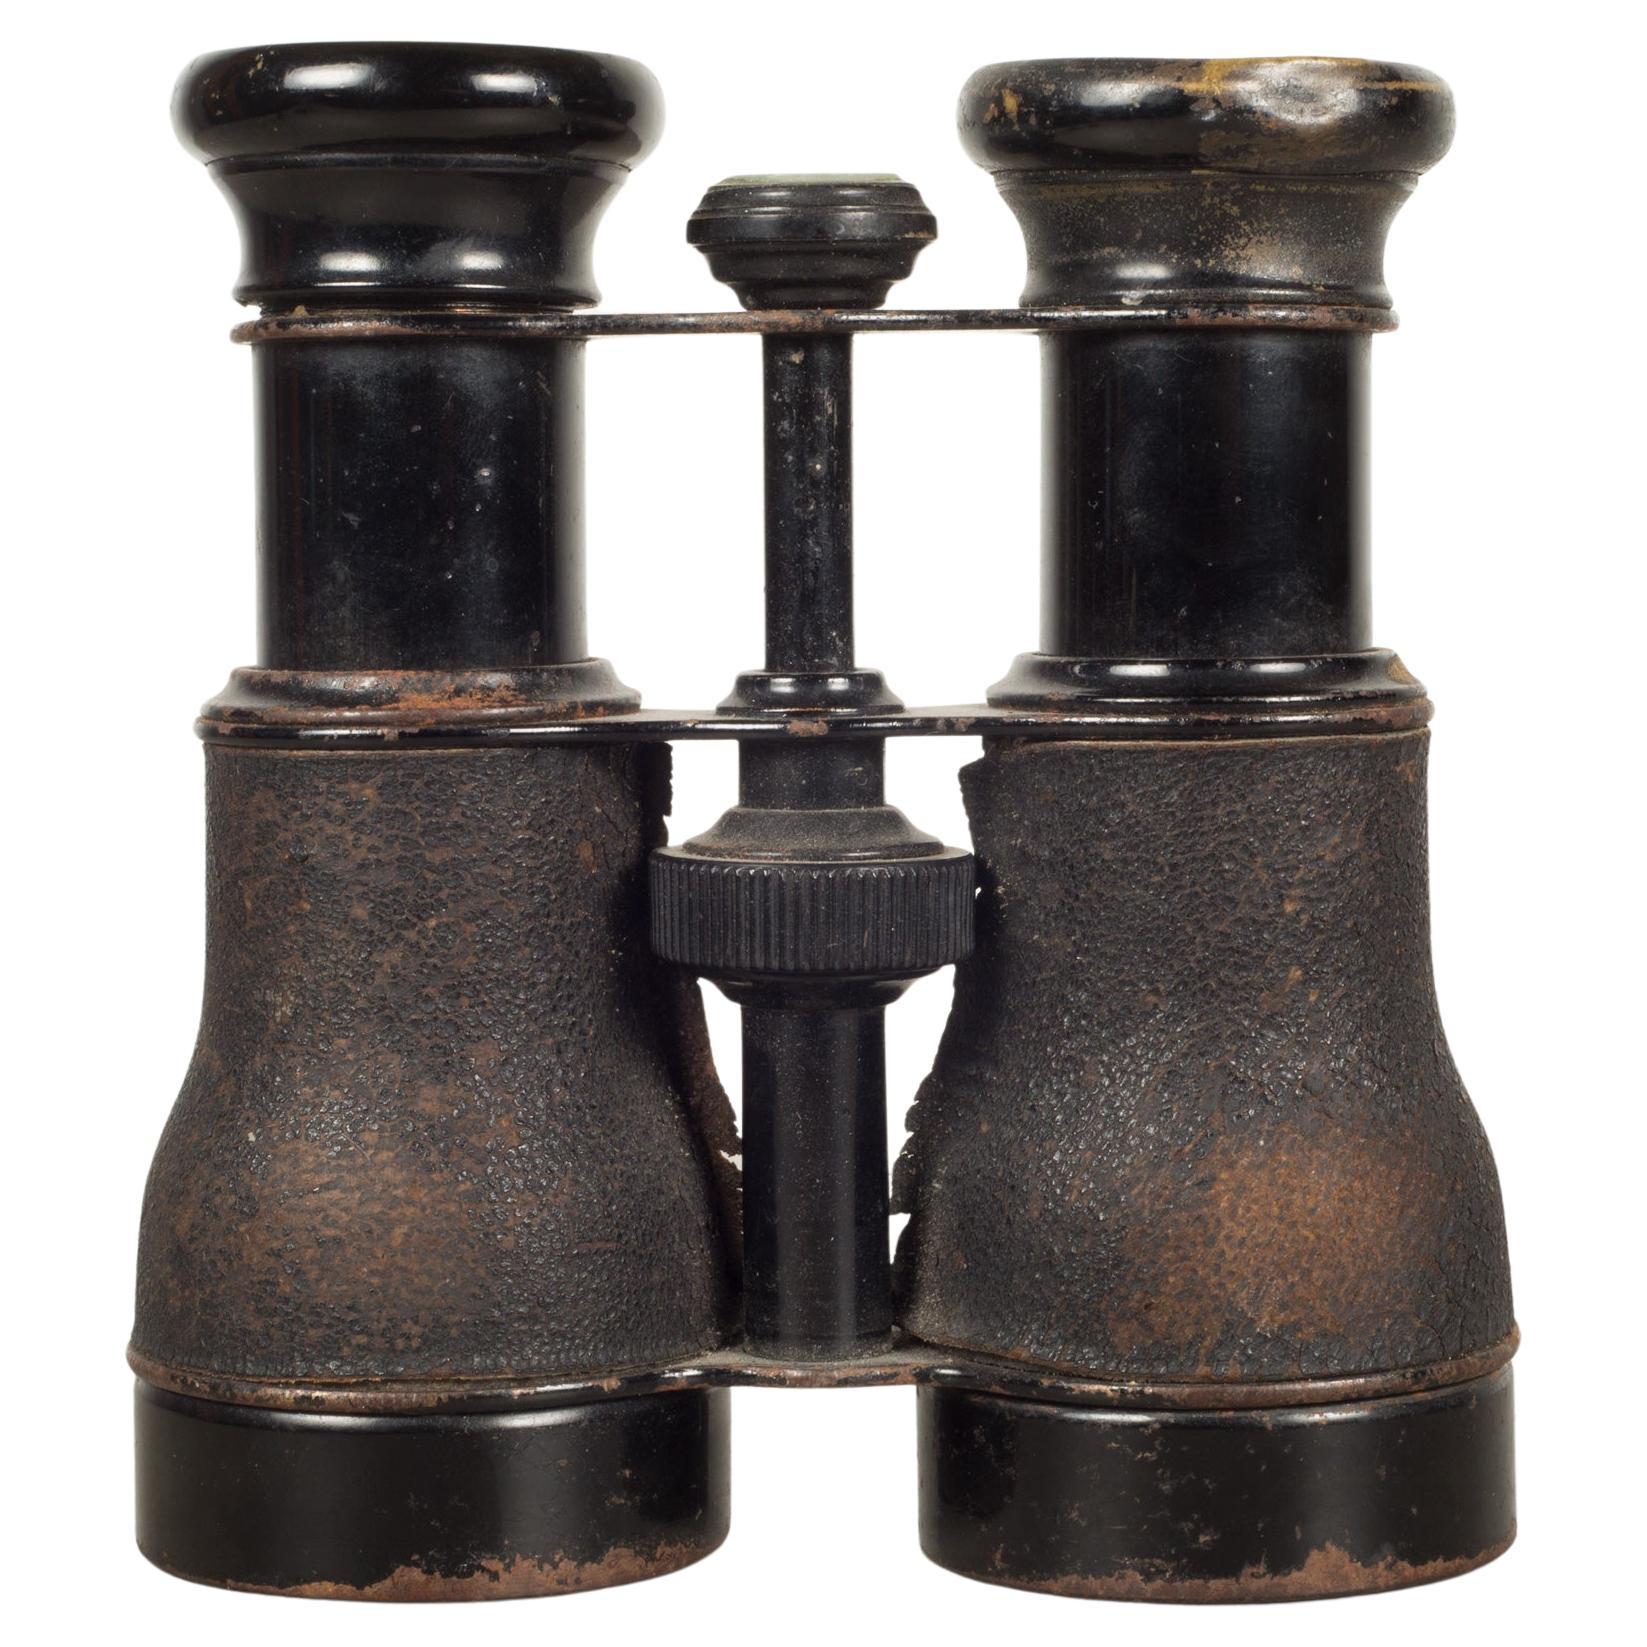 Binoculars de la marine française du 19e siècle enveloppés de cuir, vers 1880